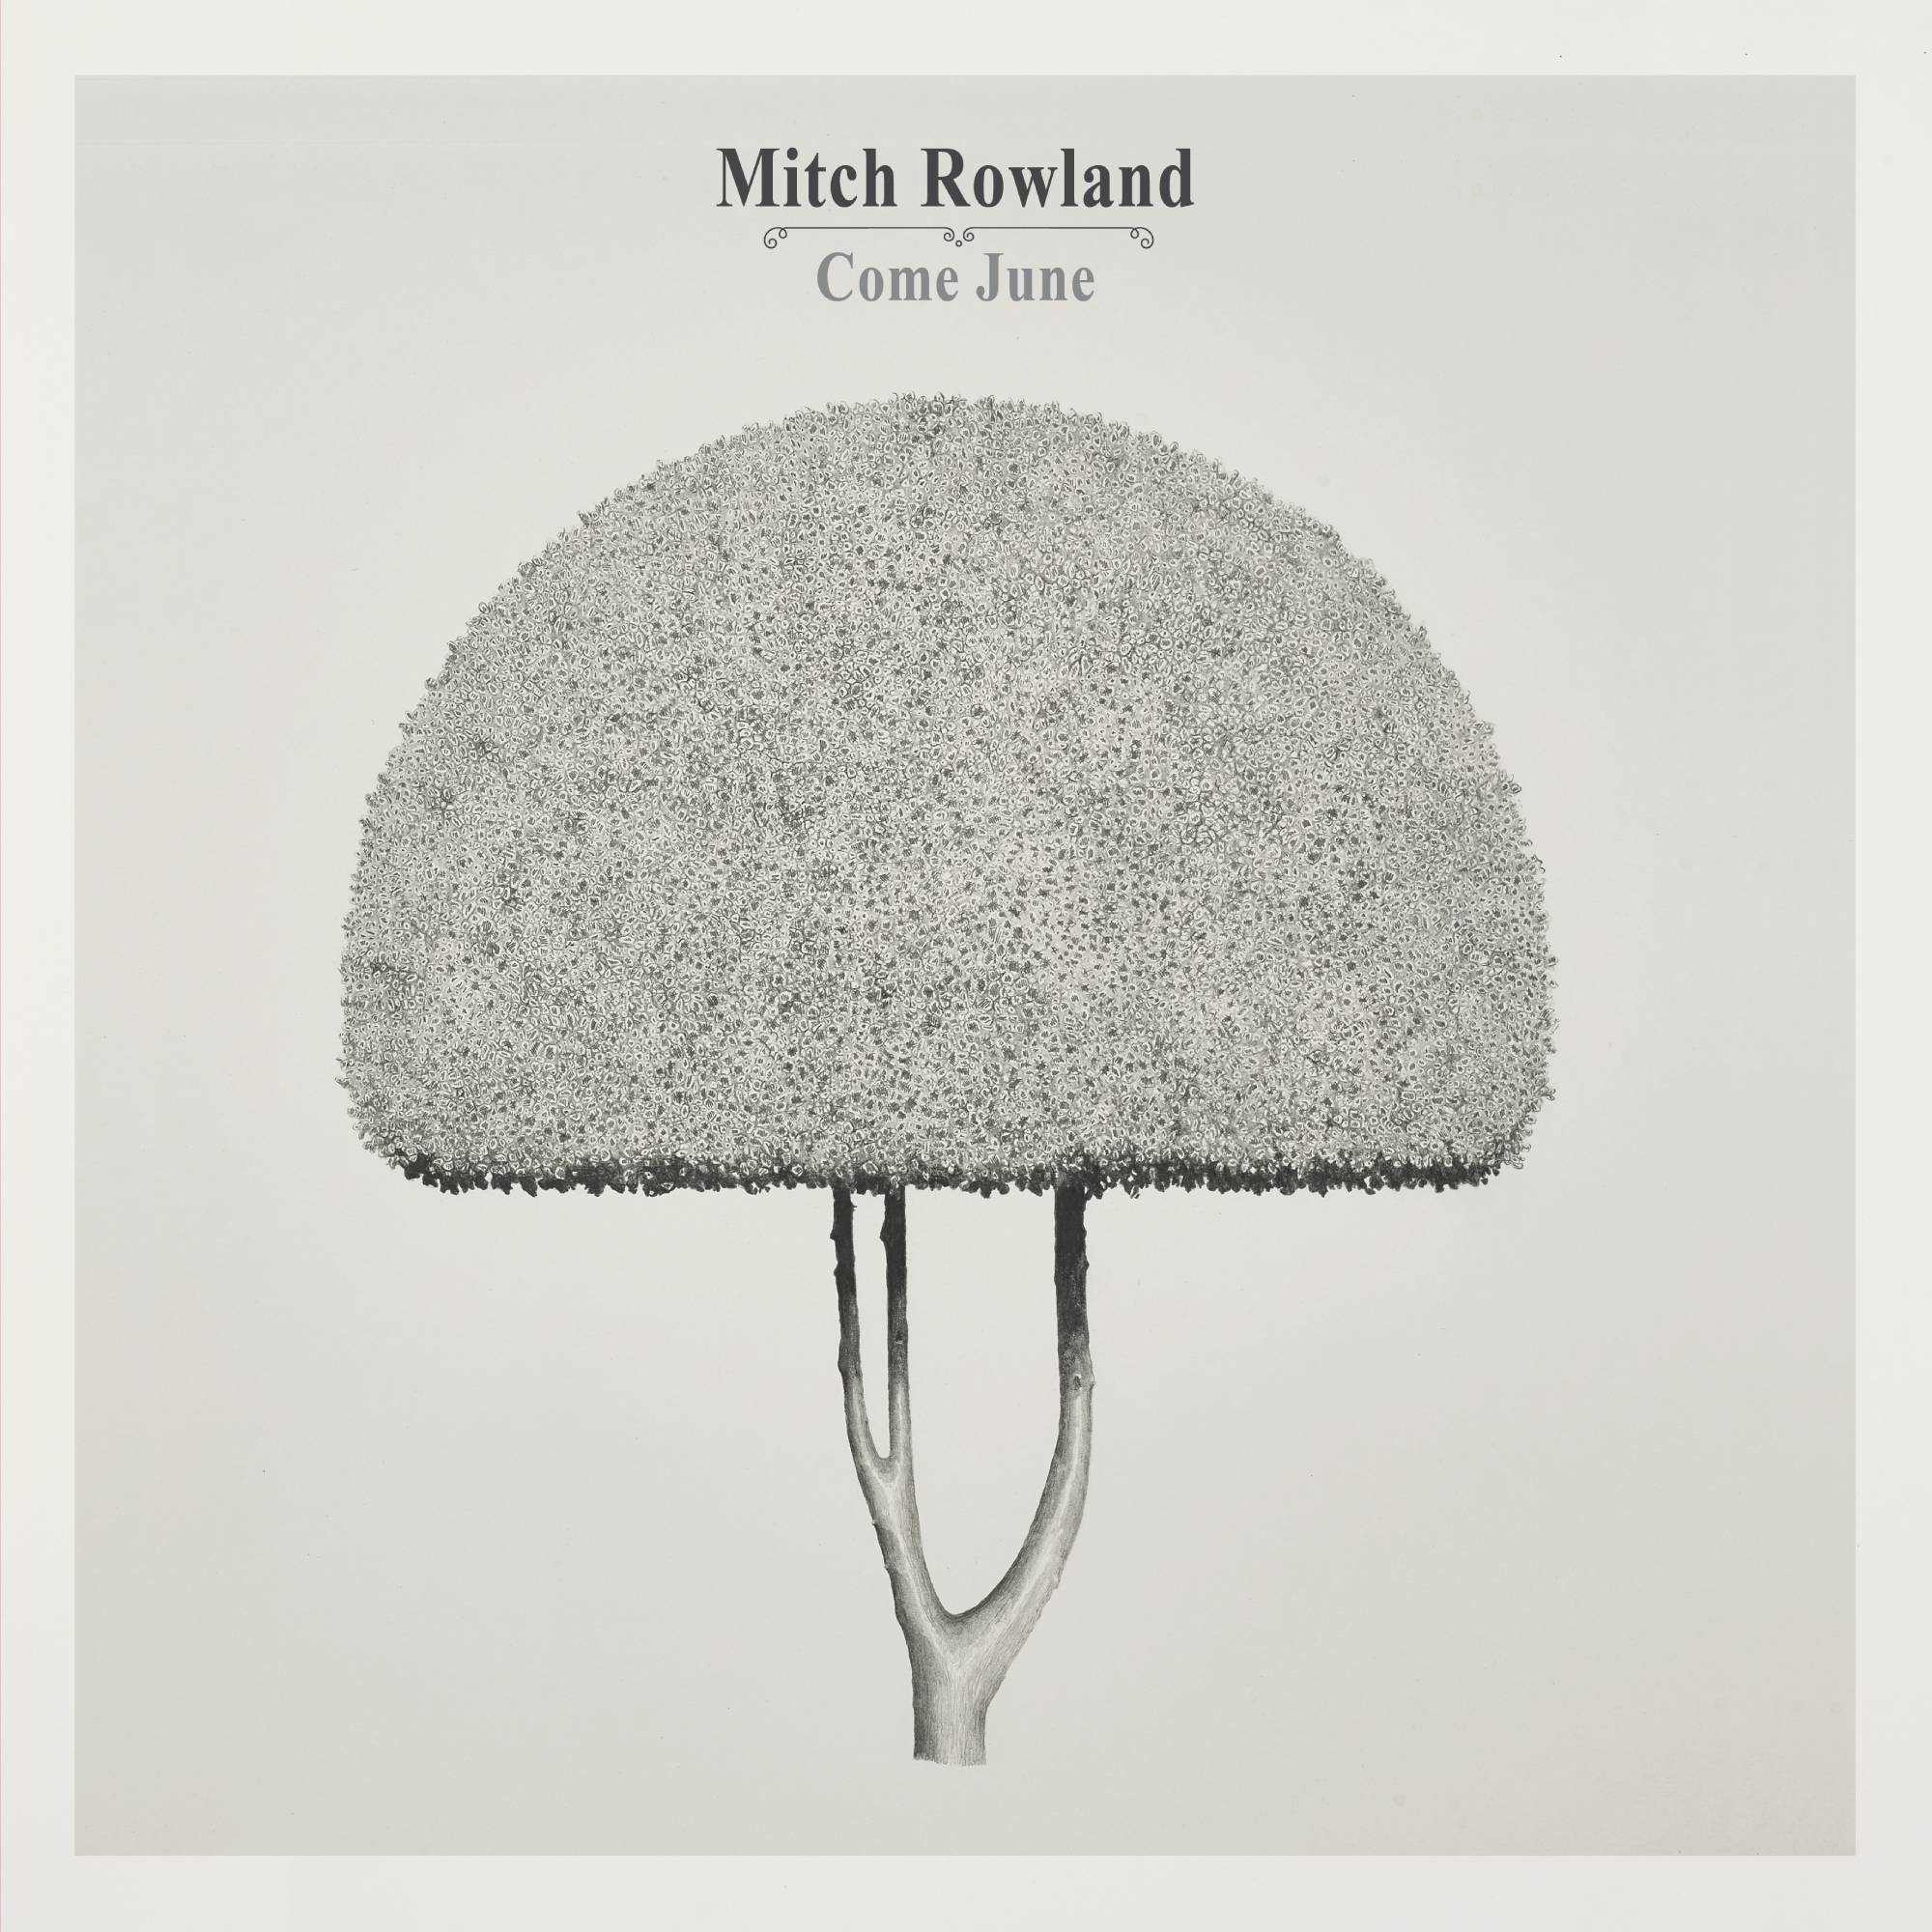 Mitch Rowland 'Come June' Album Artwork. Credit: PRESS